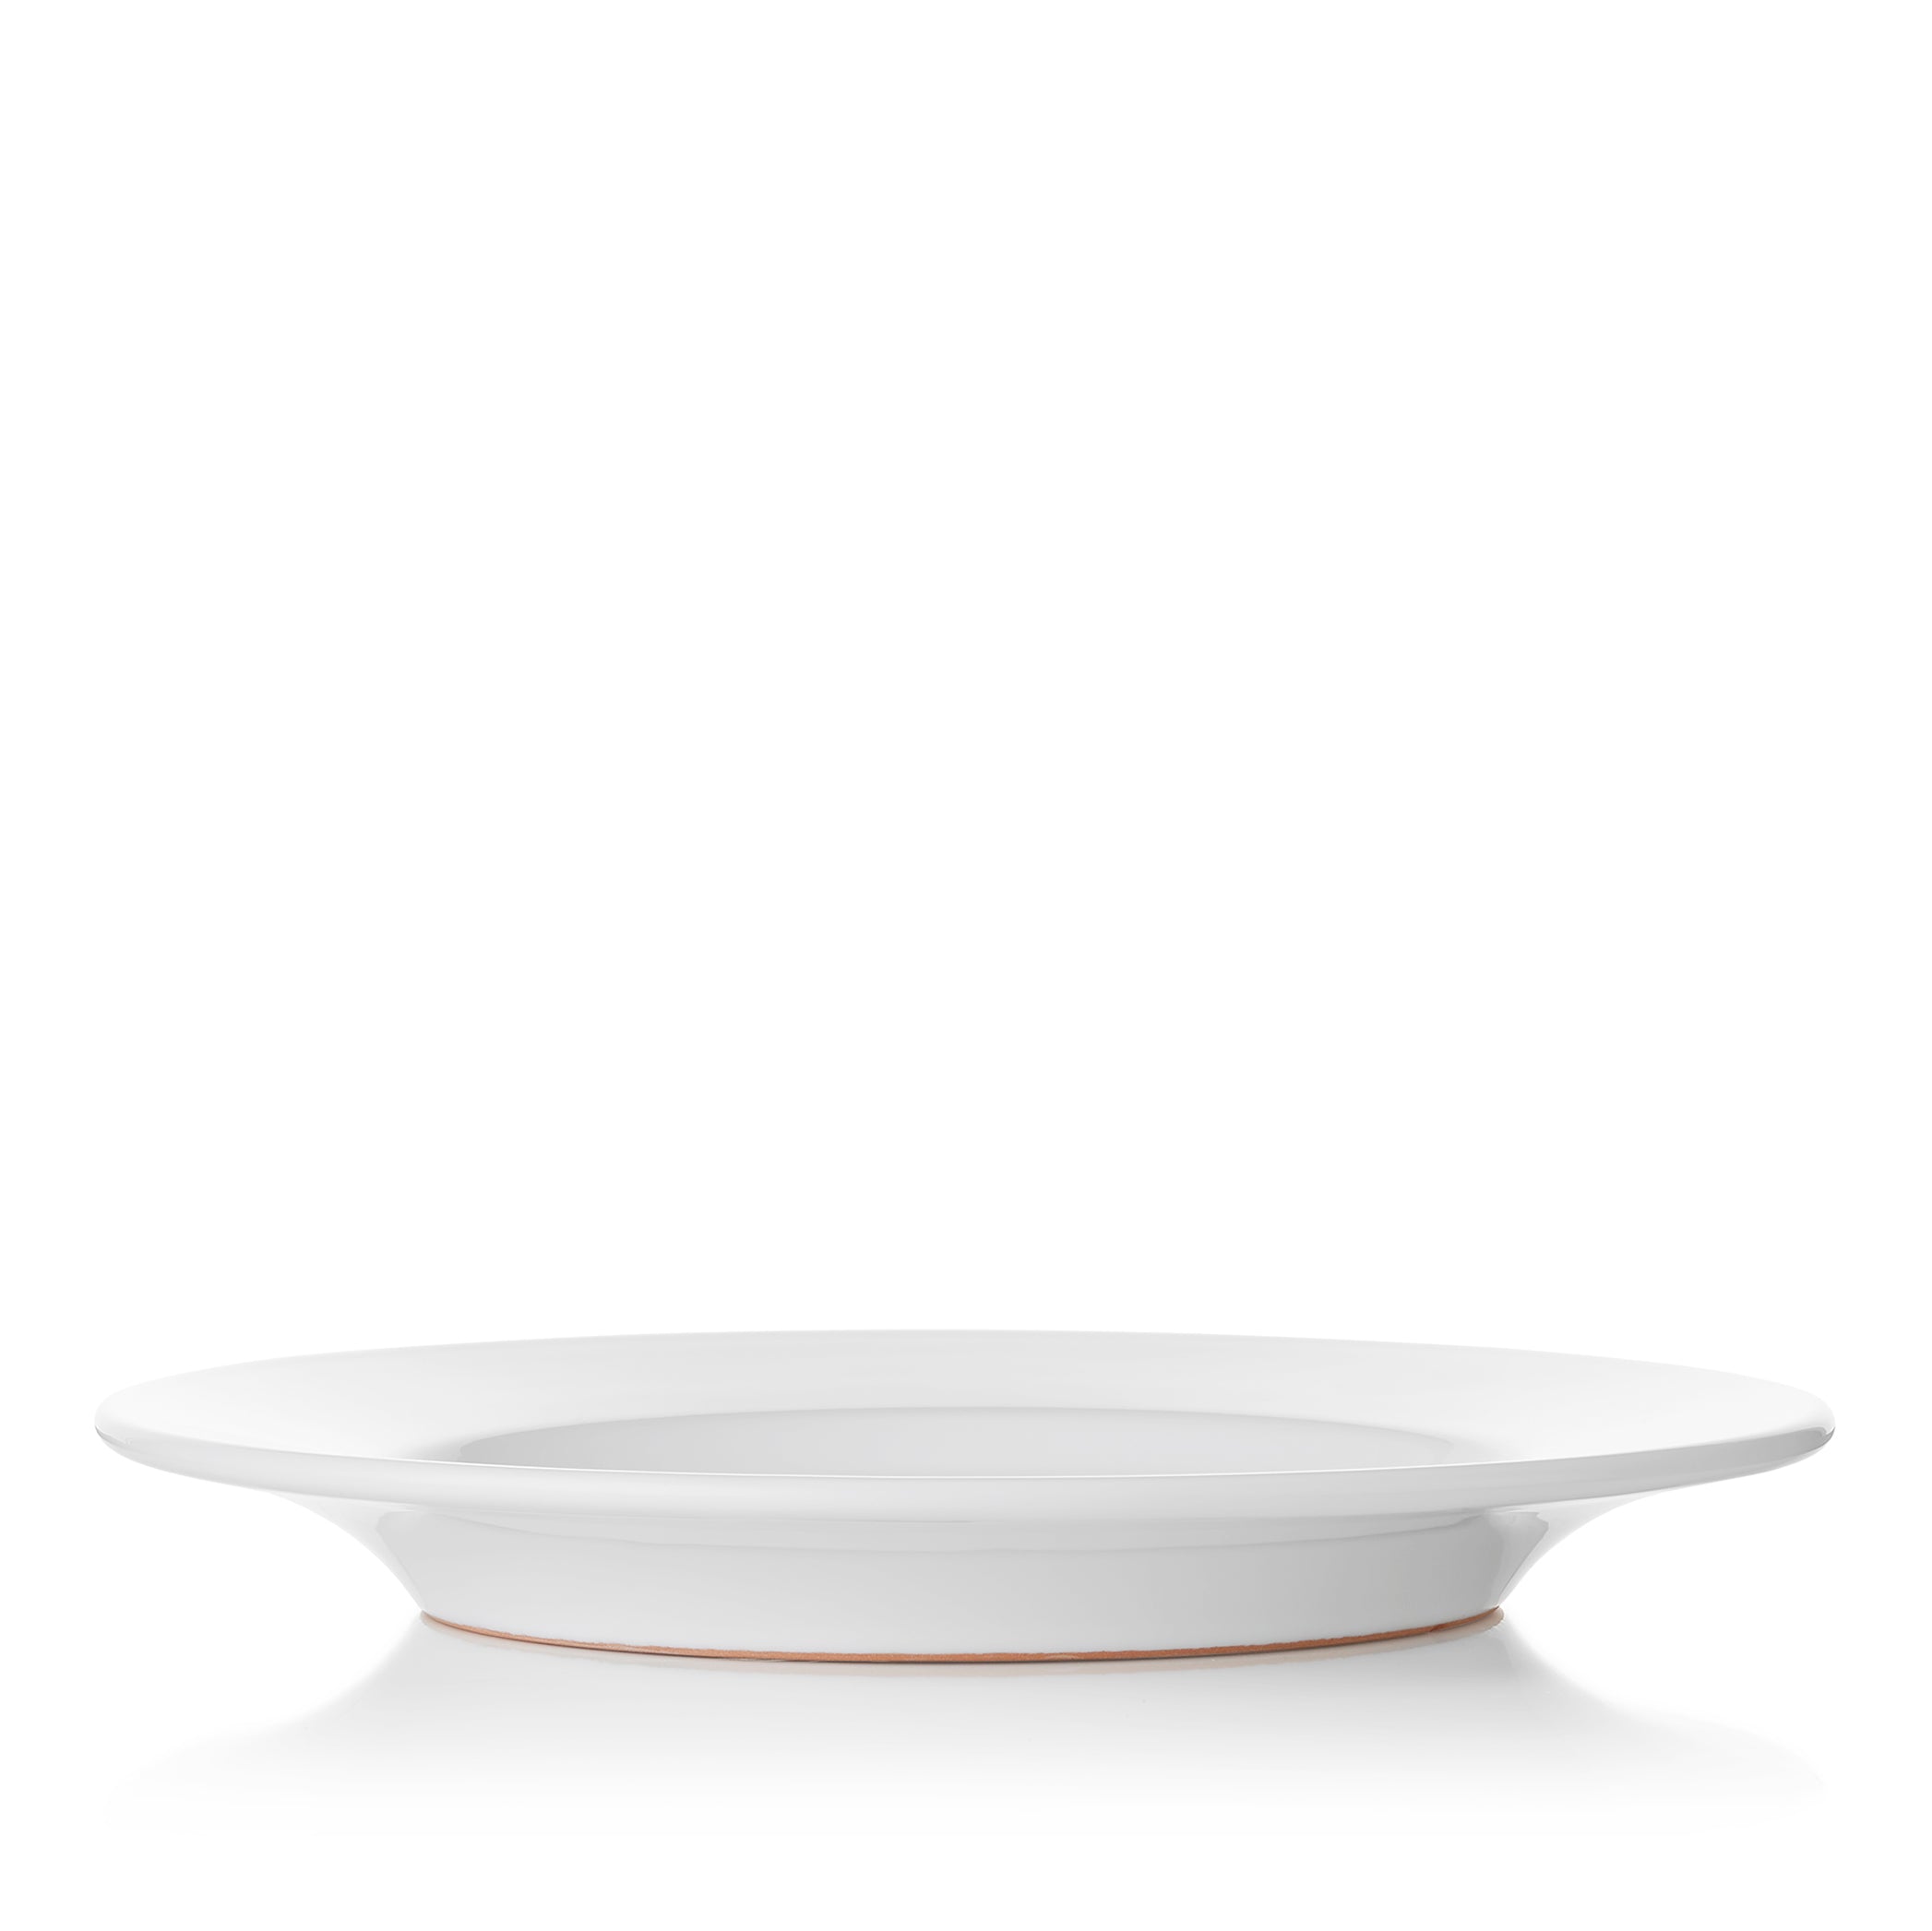 Summerill & Bishop Plain White Rimmed Ceramic Dinner Plate, 28.5cm